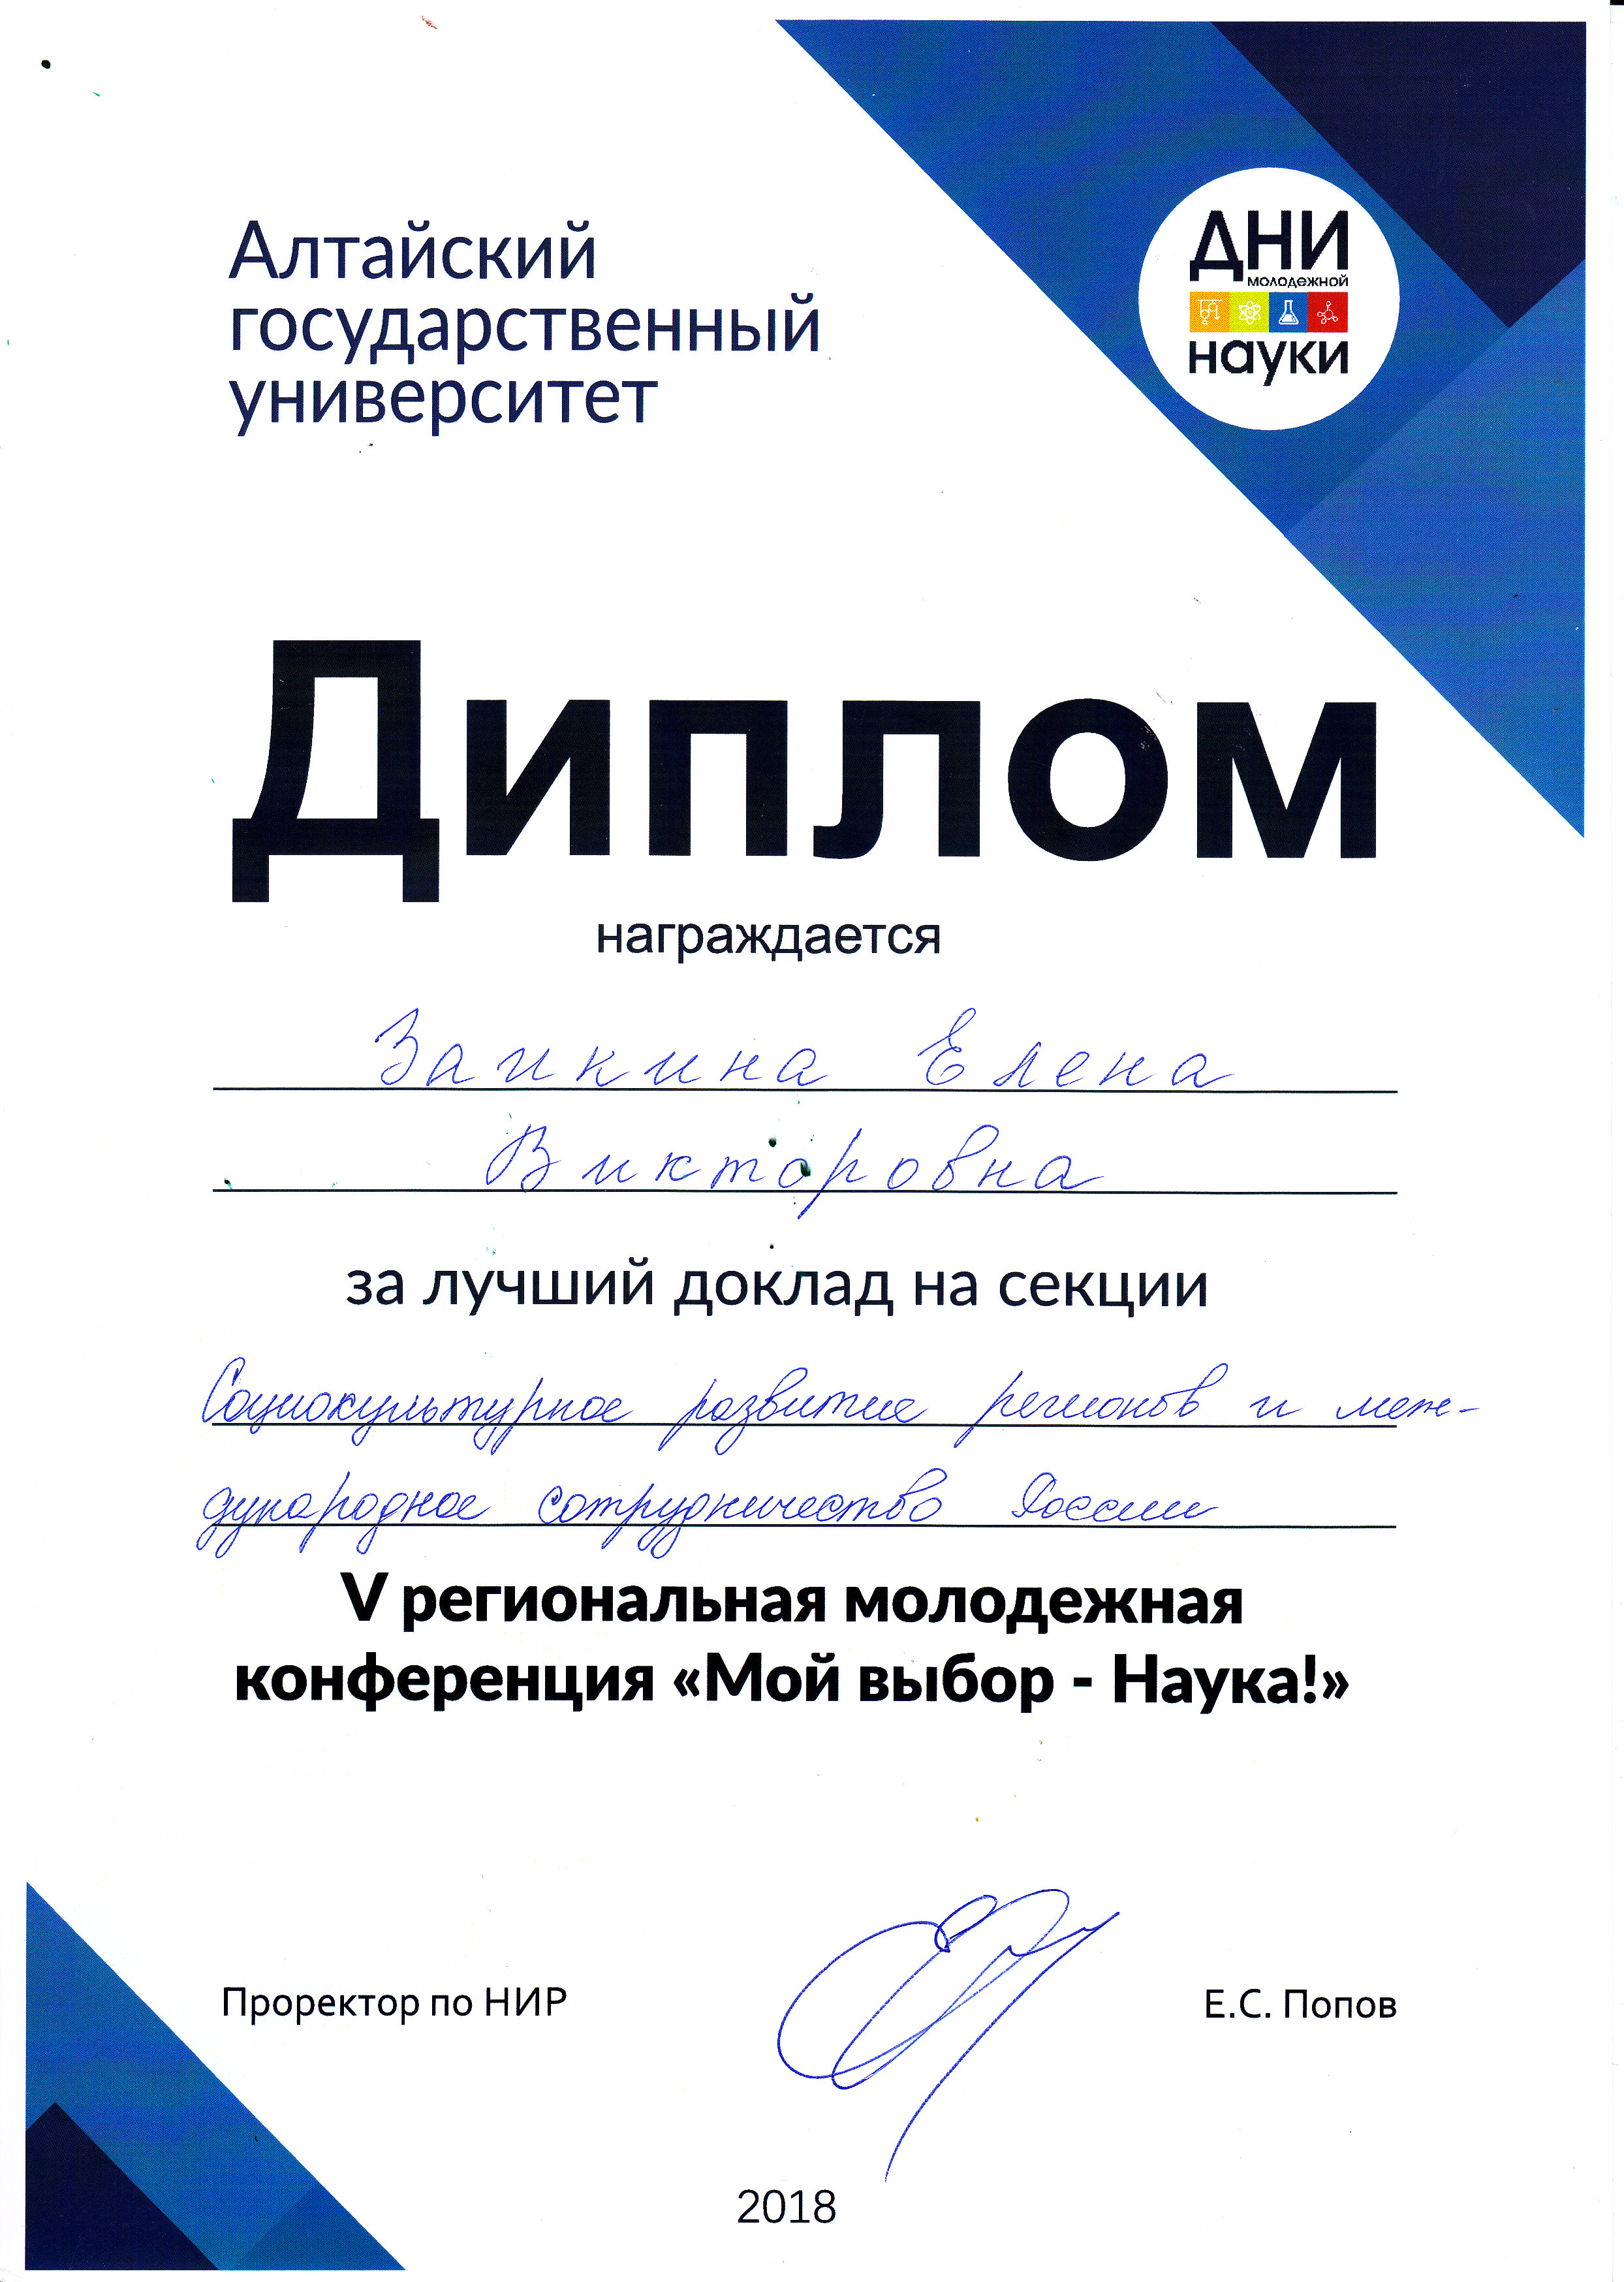 Диплом за лучший доклад в секции "Социокультурное развитие регионов и международное сотрудничество России" V Региональной молодежной конференции "Мой выбор-НАУКА!"